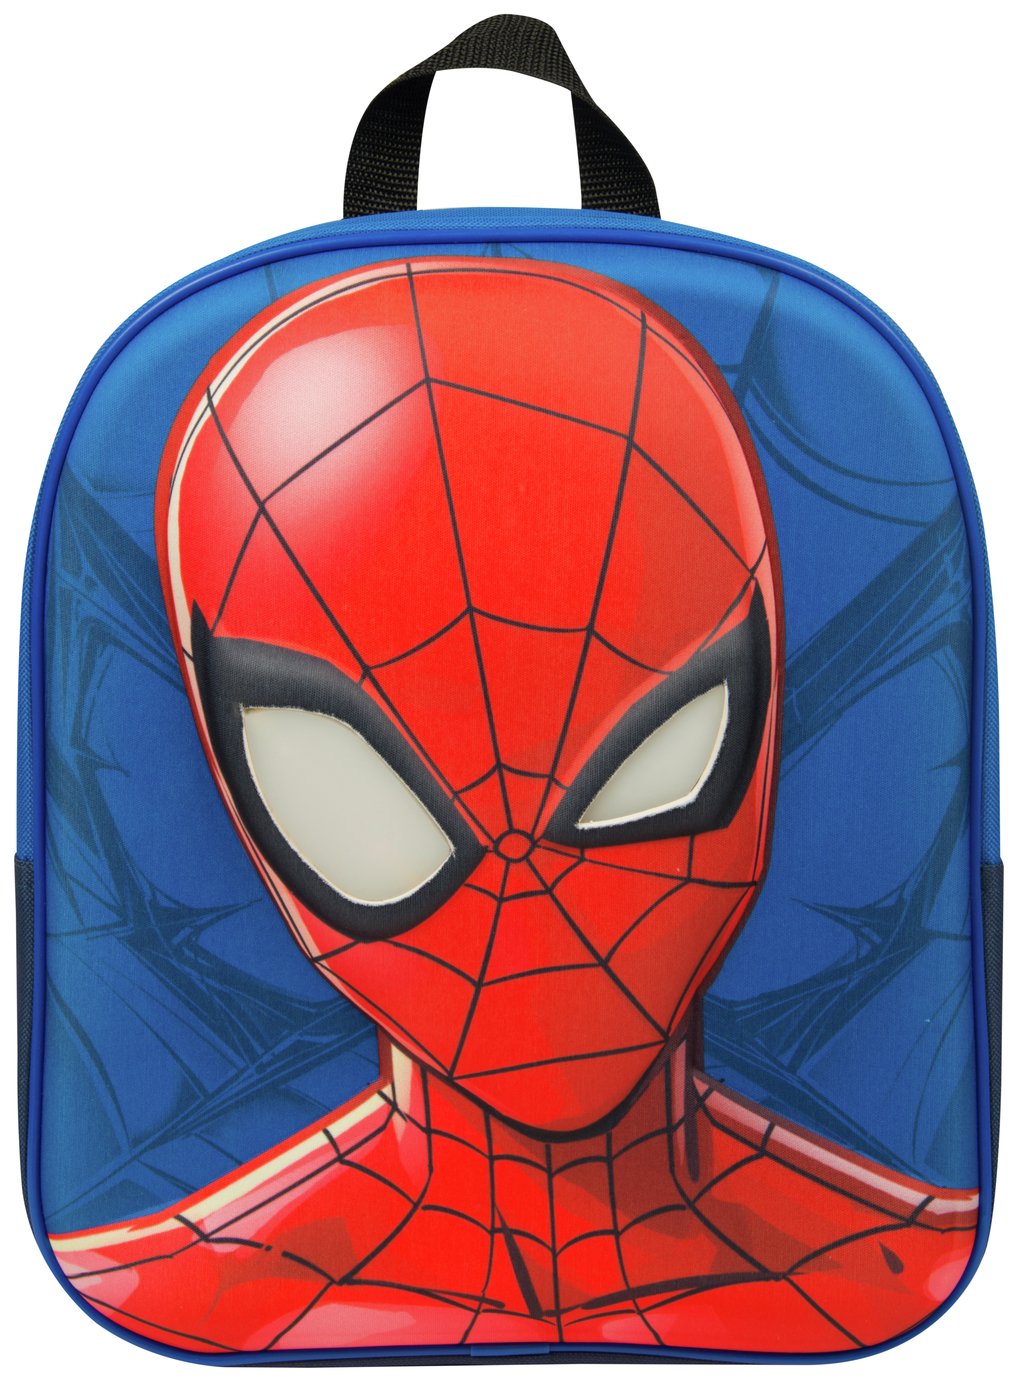 Marvel Spider-Man LED 8.6L Backpack Review